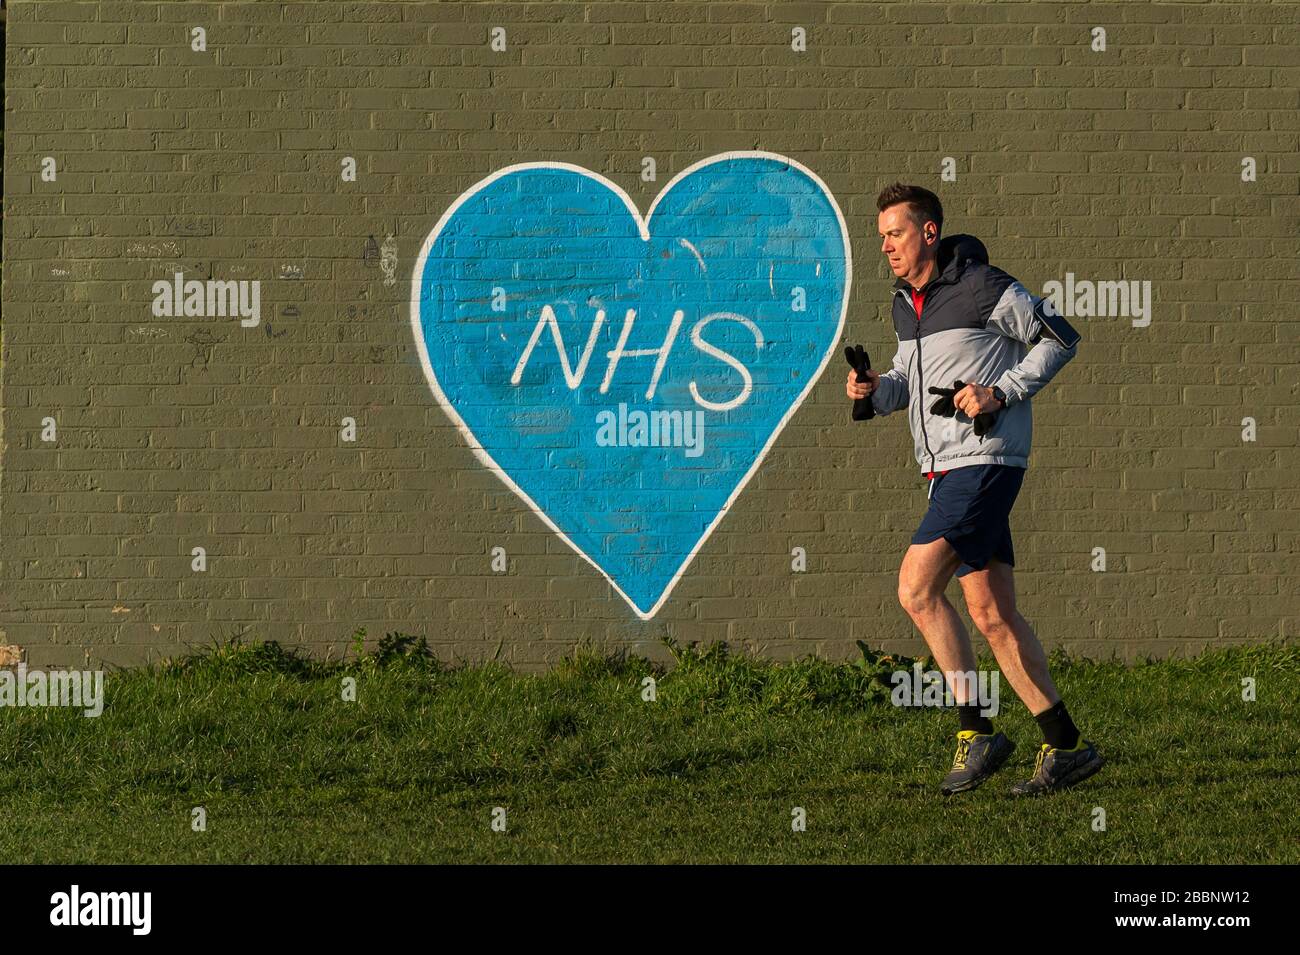 © 2020 Andrew Baker, 24. März 2020. Morgenläufer auf den Wanstead-Wohnungen laufen an Graffiti vorbei, die die NHS unterstützen. Foto © Andrew Baker Stockfoto